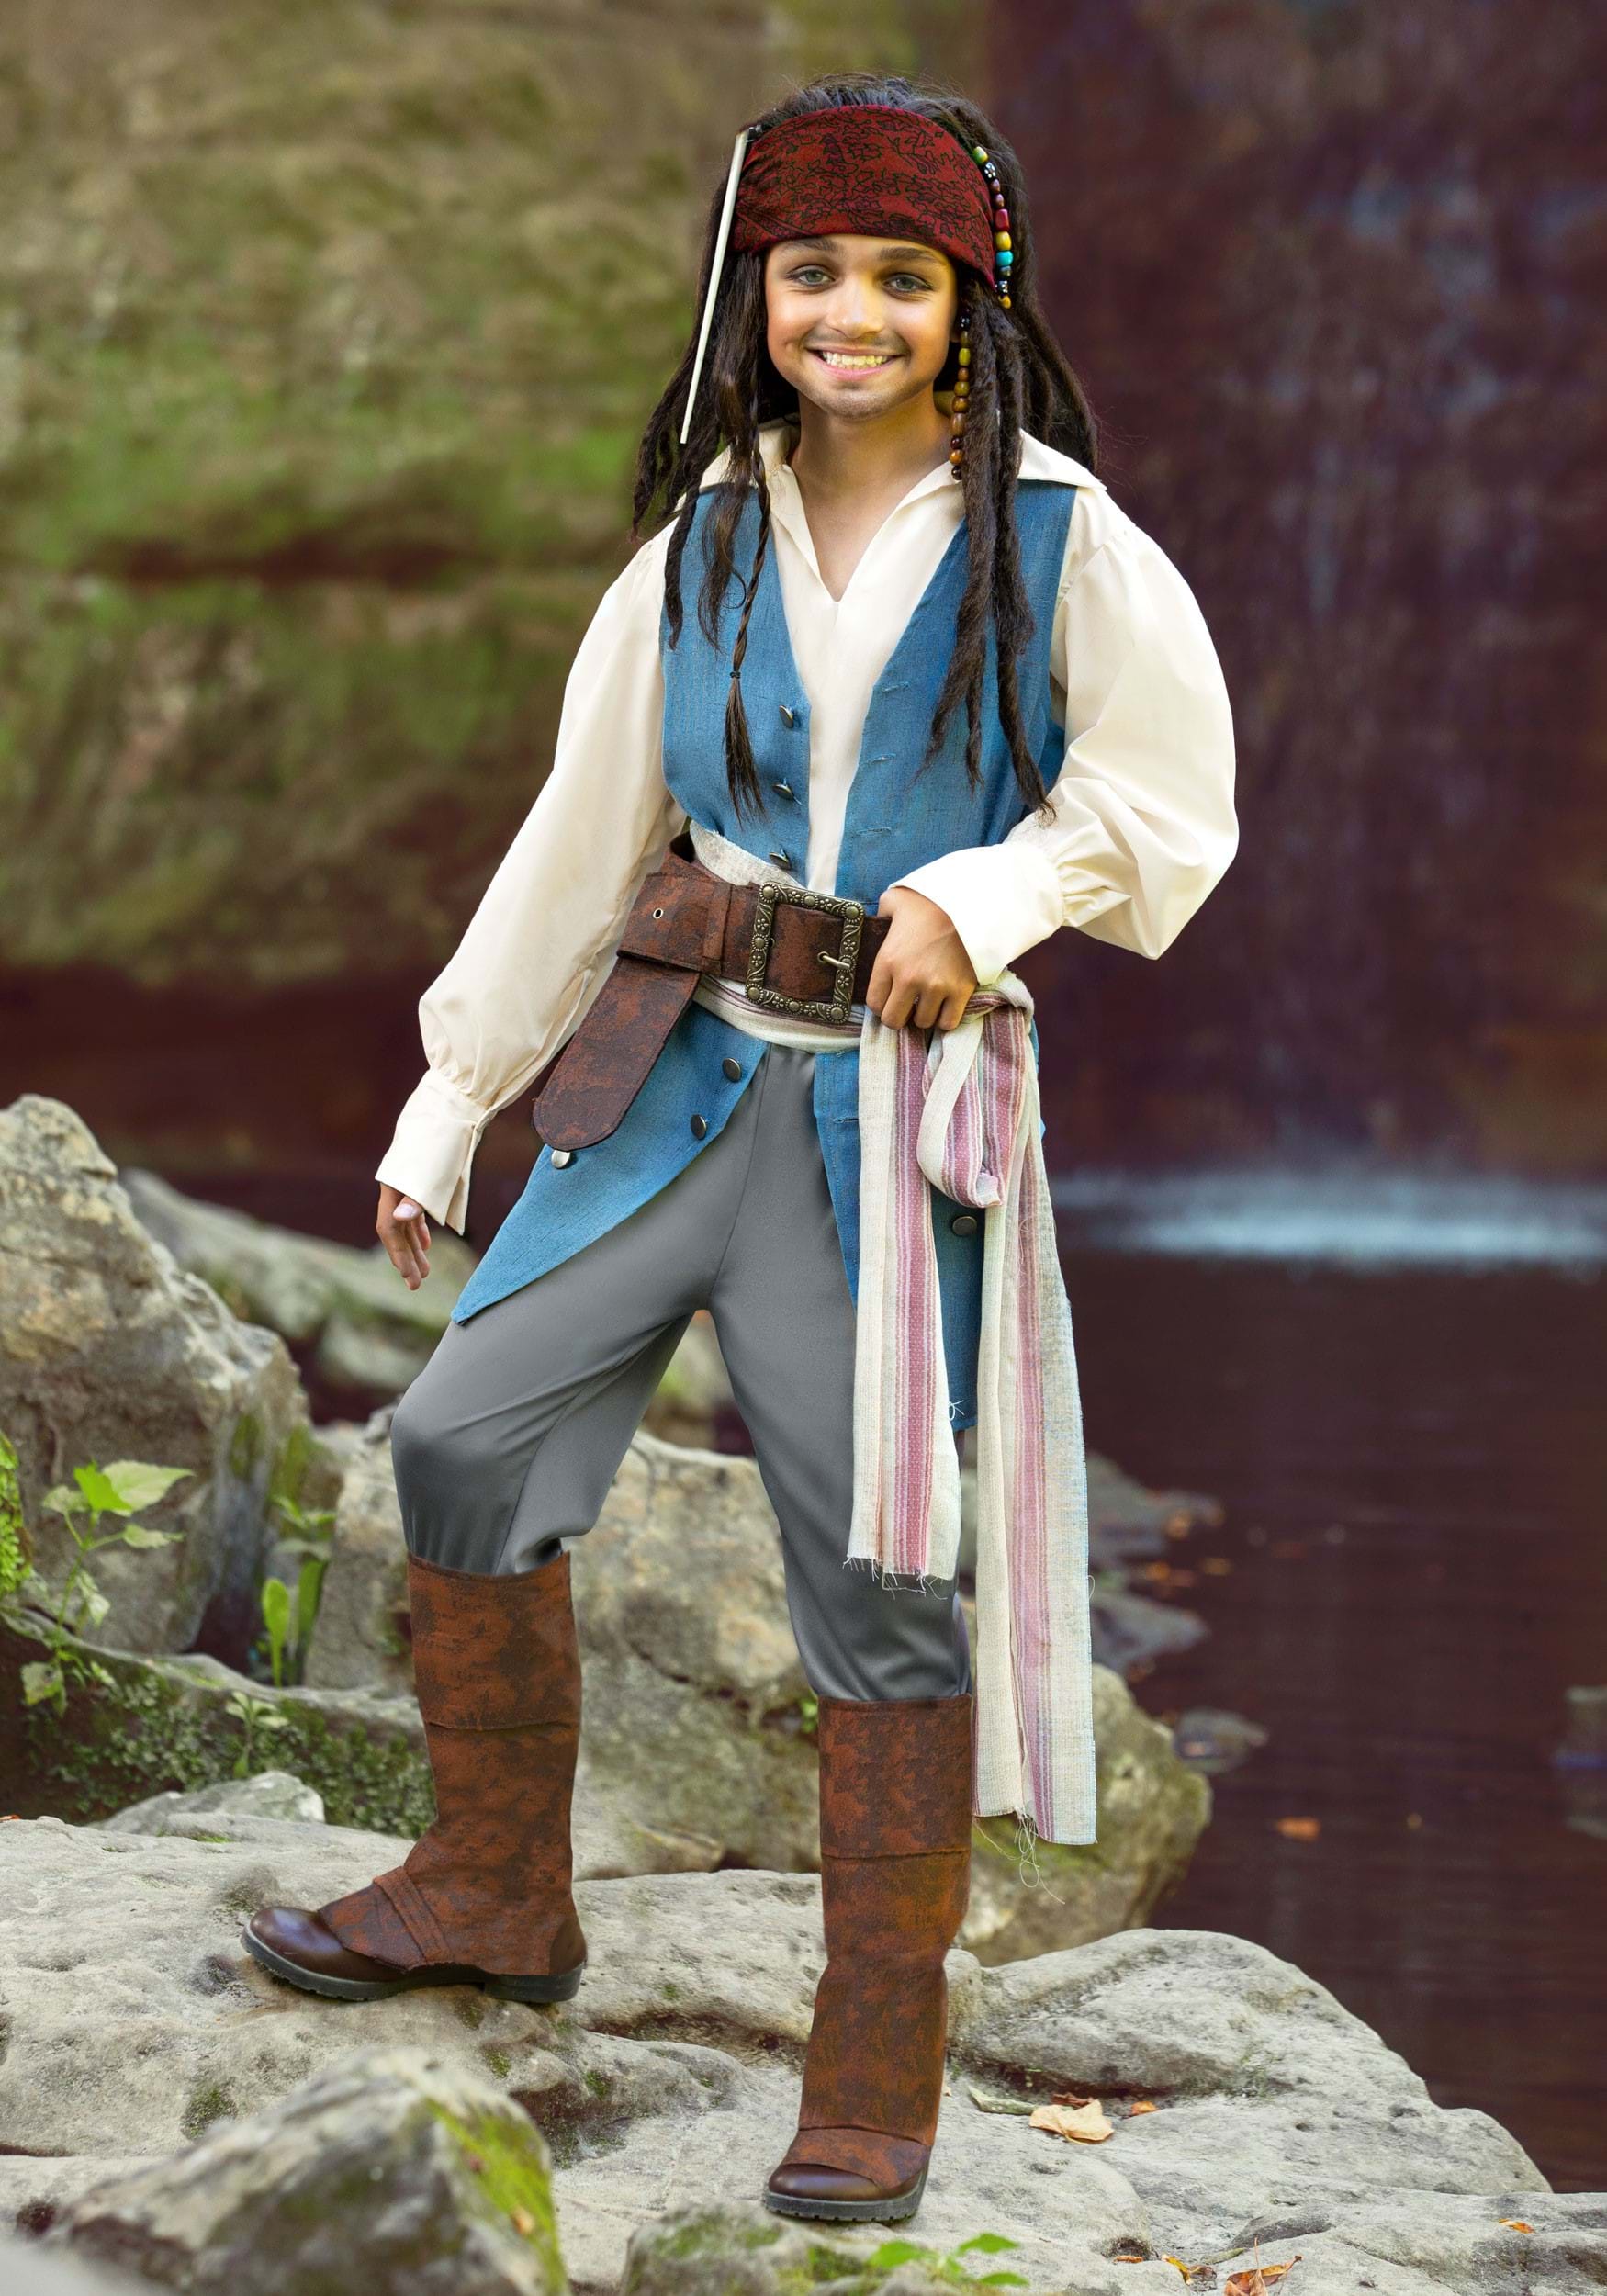 Kids Captain Jack Sparrow Costume